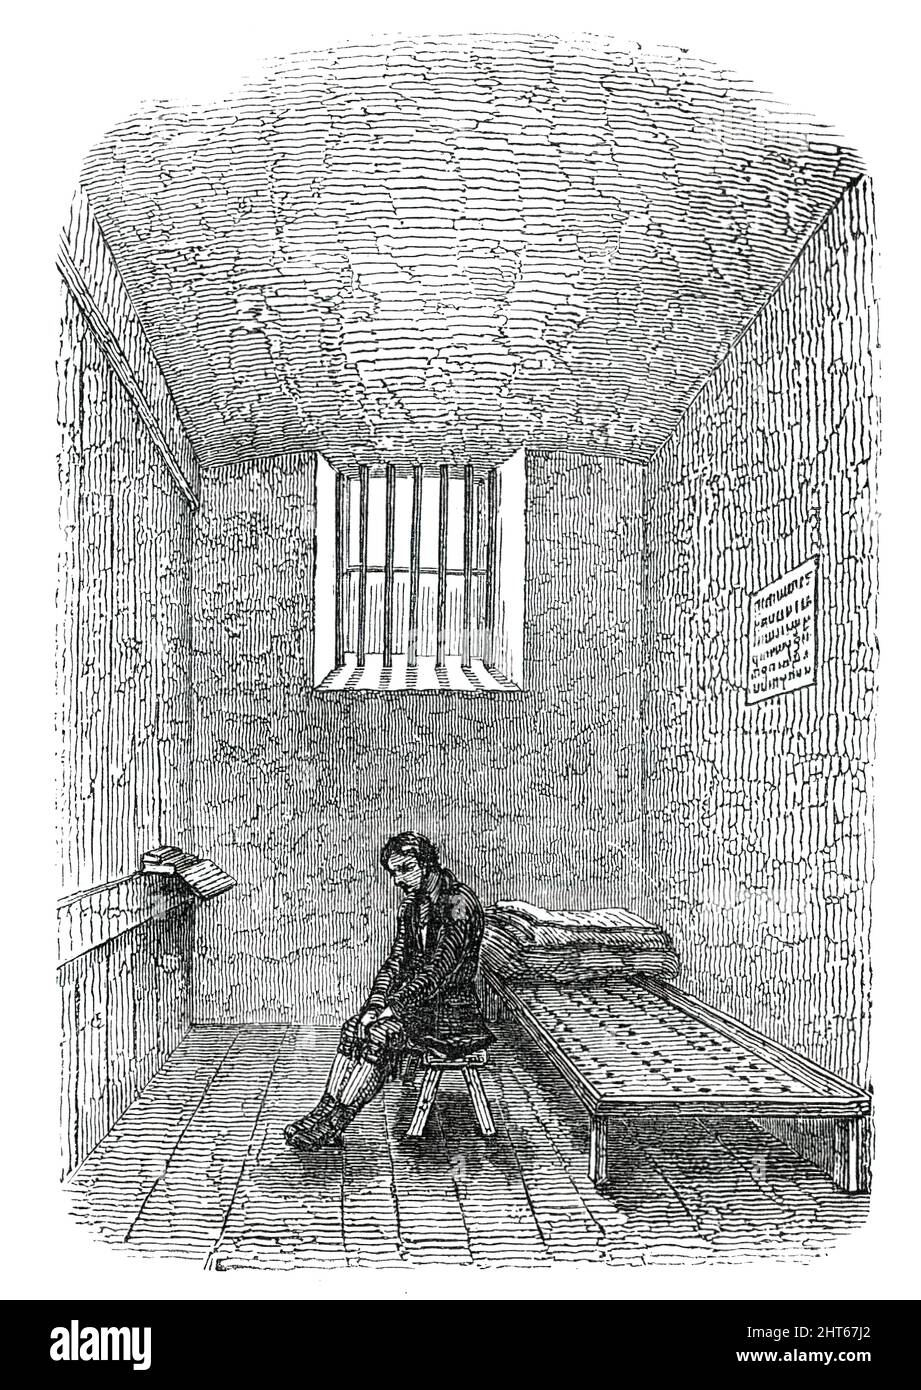 Тюрьма средневековья